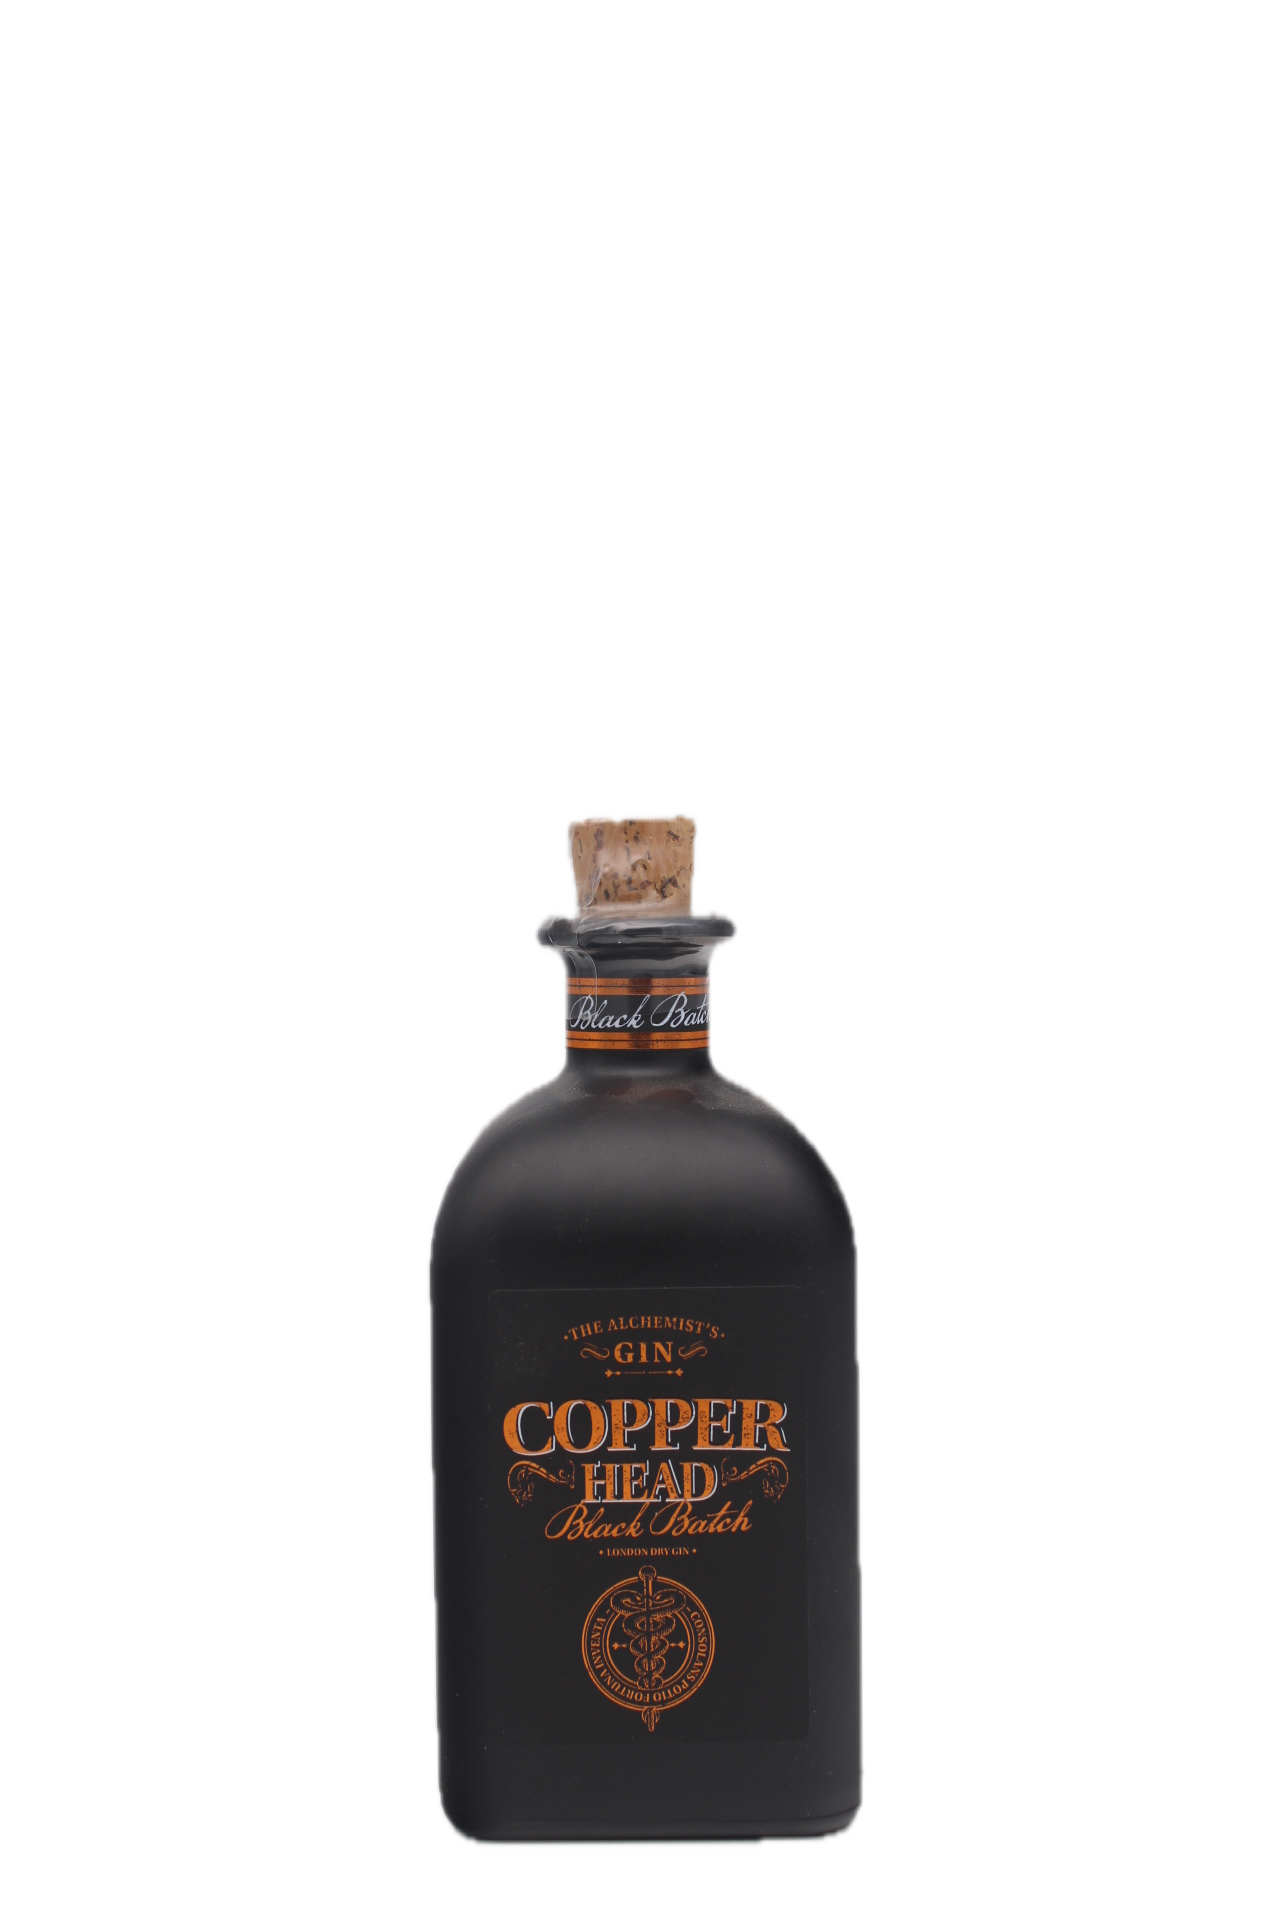 Copper Head Black Batch Gin